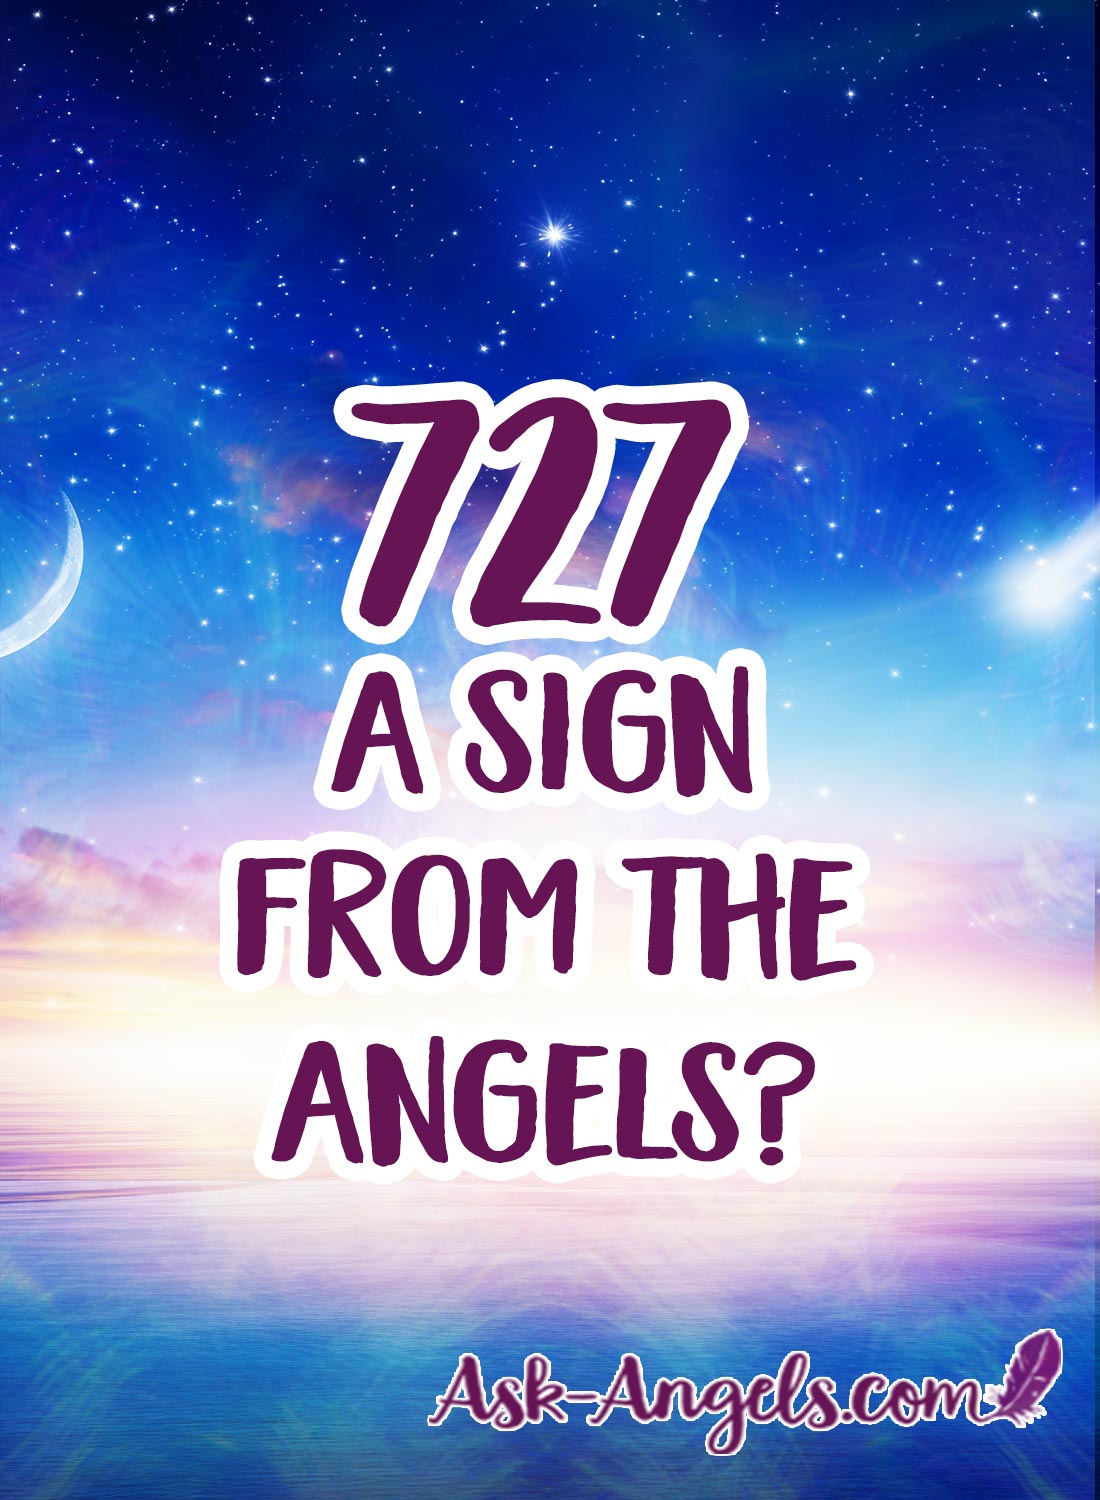 727 天使たちからのサイン？